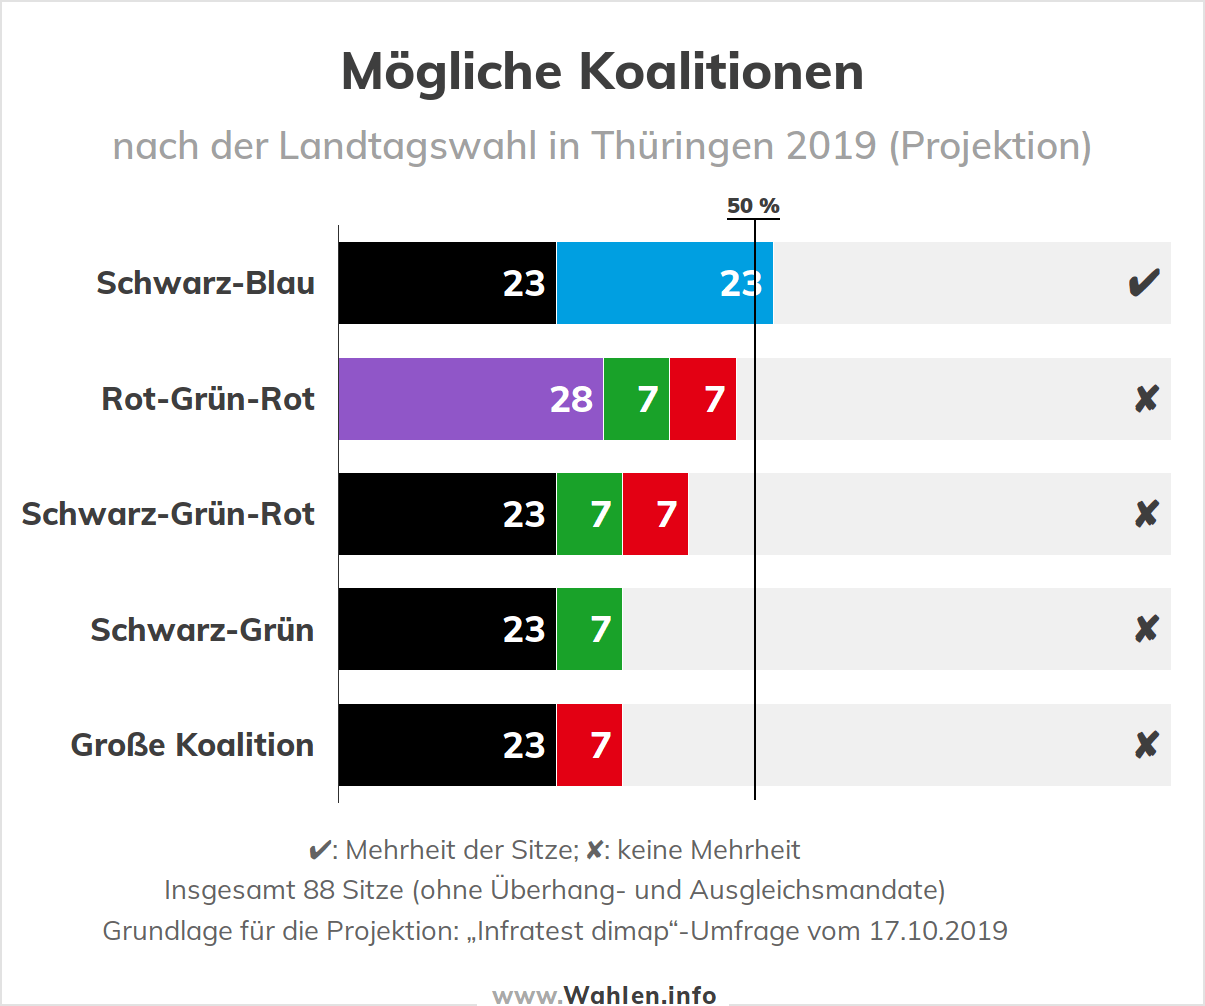 Landtagswahl in Thüringen - Mögliche Koalitionen nach der nächsten Landtagswahl (Koalitionsrechner)